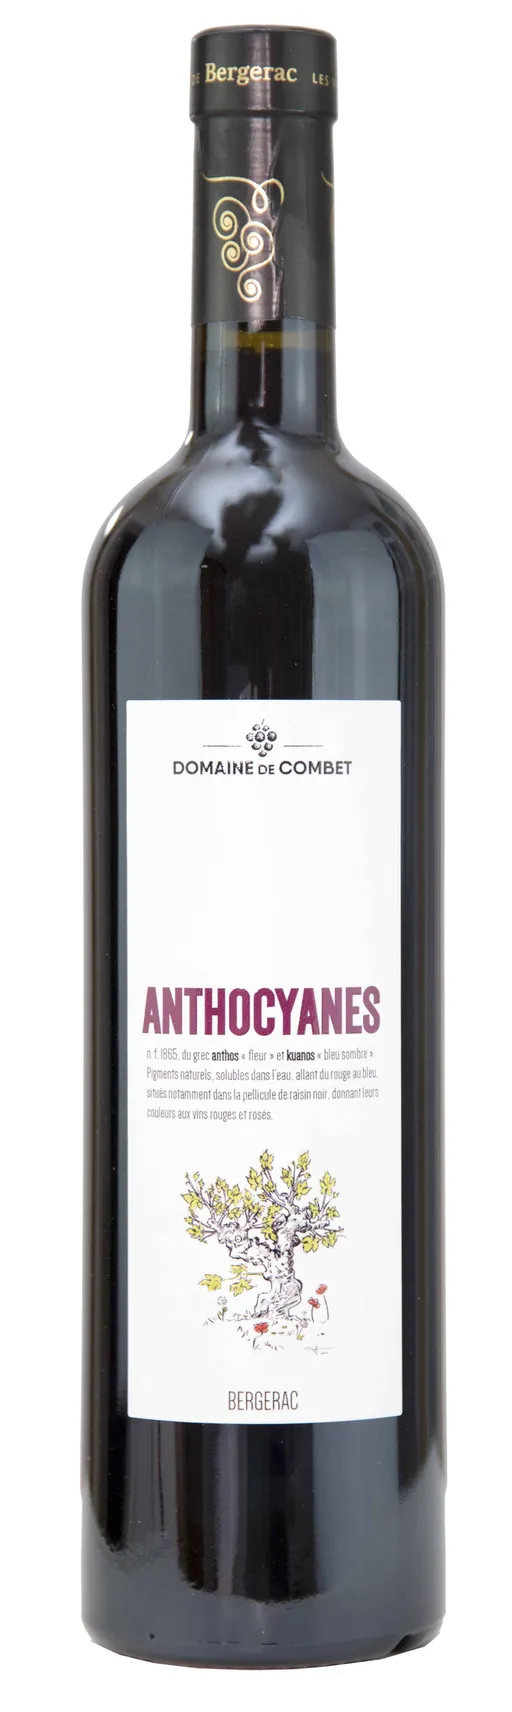 Earl de Combet ANTHOCYANES, Rosso, 2021, Bergerac. Immagine della bottiglia